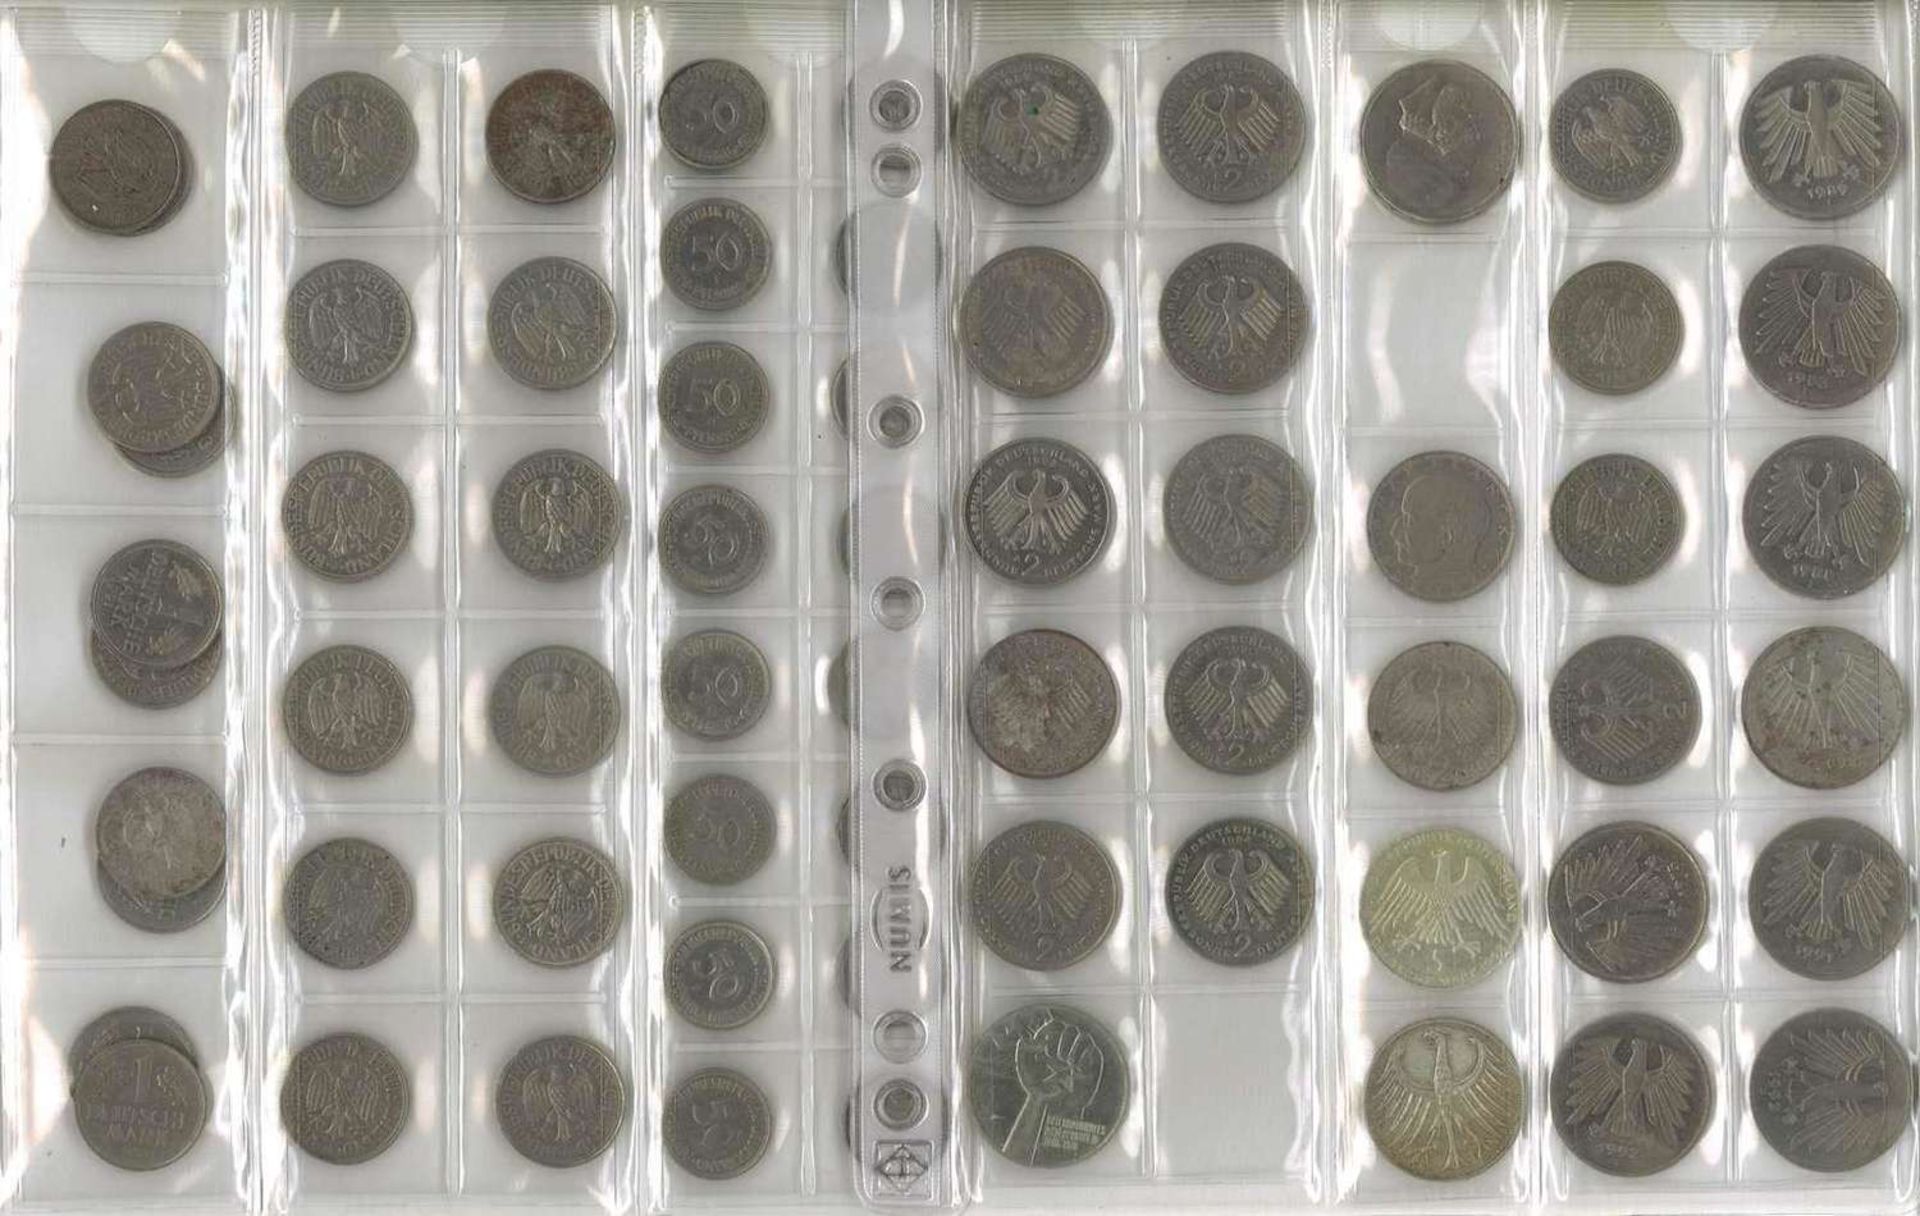 Lot Münzen, meist BRD, dabei 7x 10 Mark, 25x 5 Mark, 13x 2 Mark, 35x 1 Mark, 37x 50 Pfennig. Nomin - Image 4 of 6